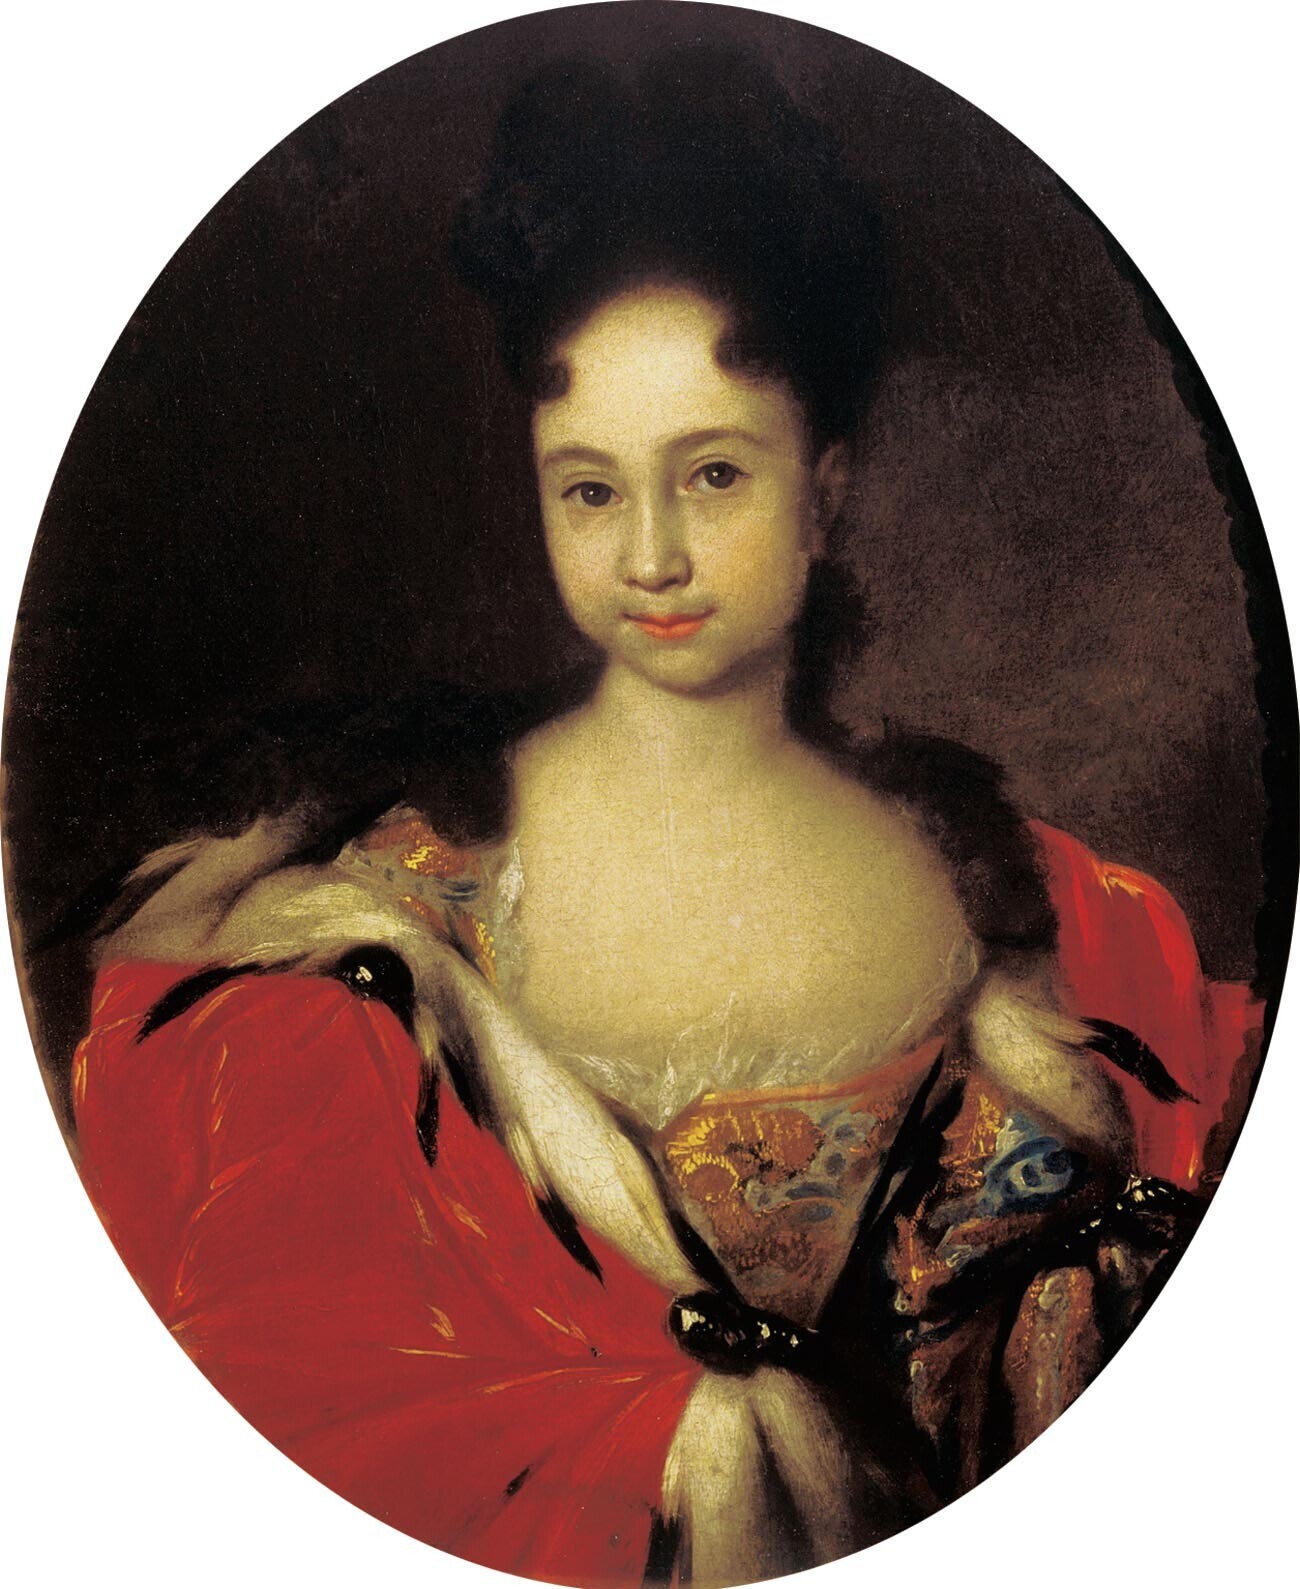 Anna yang tersesat pada tahun 1716. Dalam potret tersebut, Anna berusia sekitar enam atau tujuh tahun, tetapi rambutnya ditata seperti orang dewasa dan dia berpakaian seperti wanita dewasa